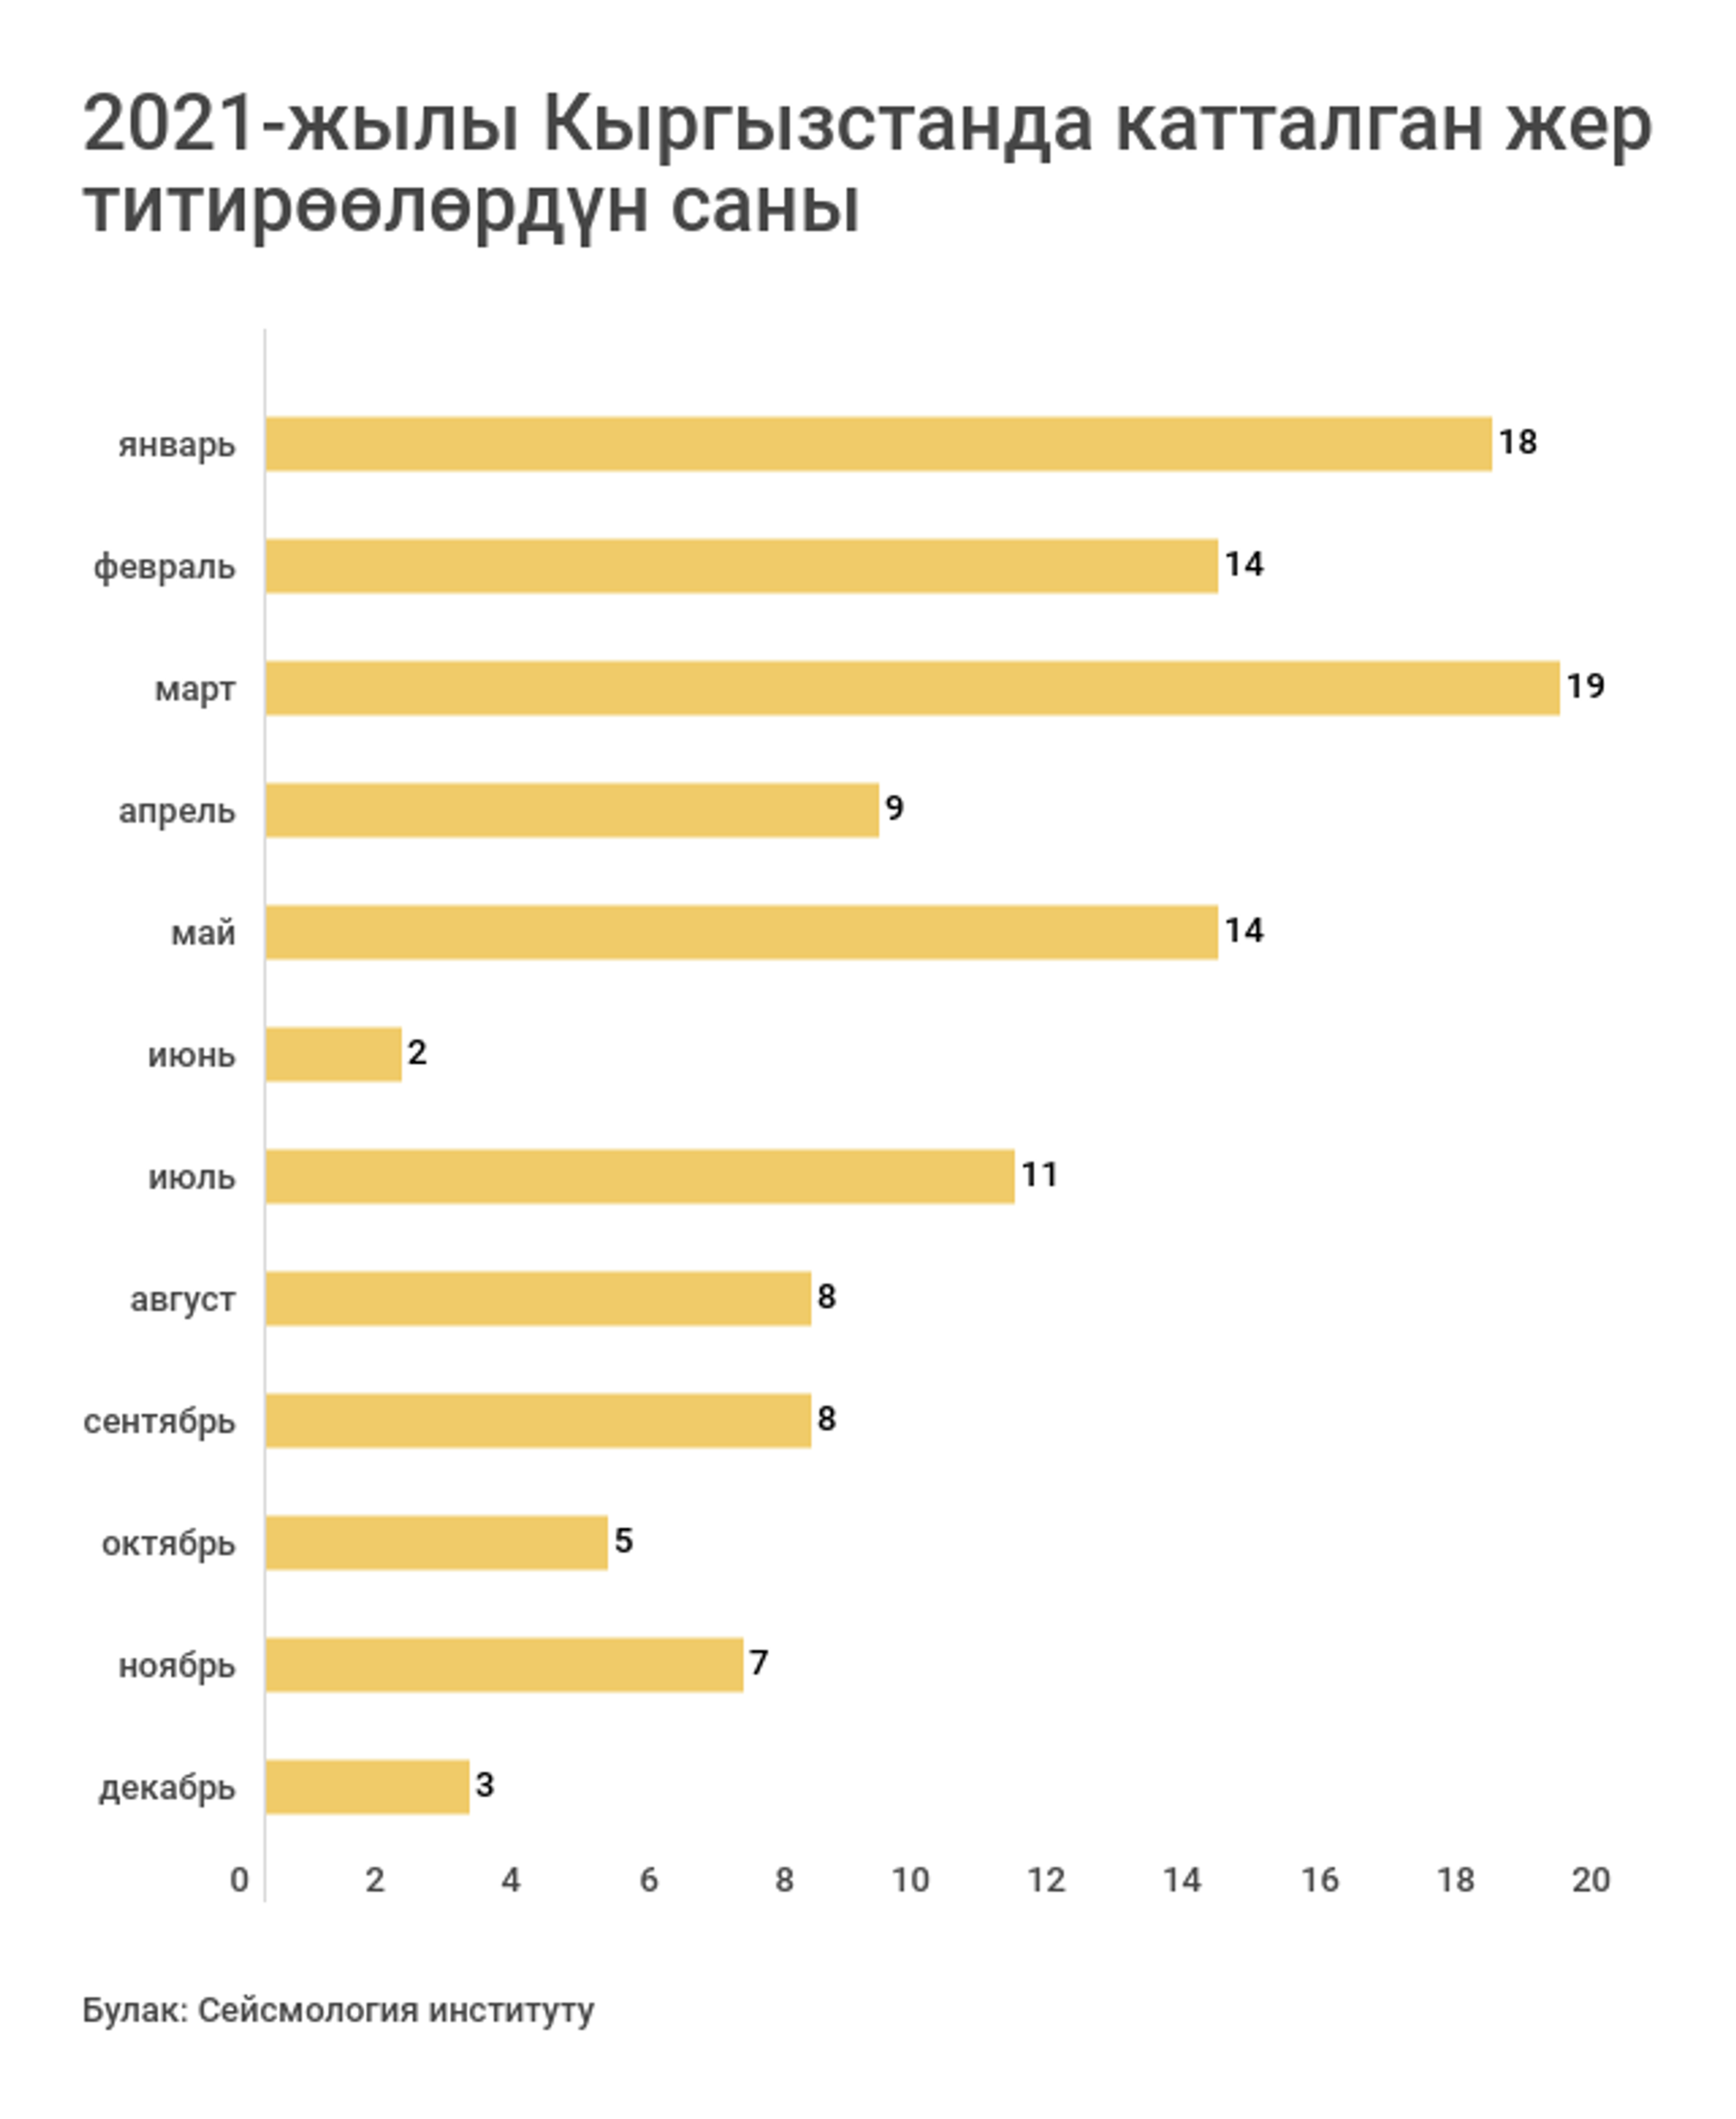 2021-жылы Кыргызстанда катталган жер титирөөлөрдүн саны  - Sputnik Кыргызстан, 1920, 08.01.2022